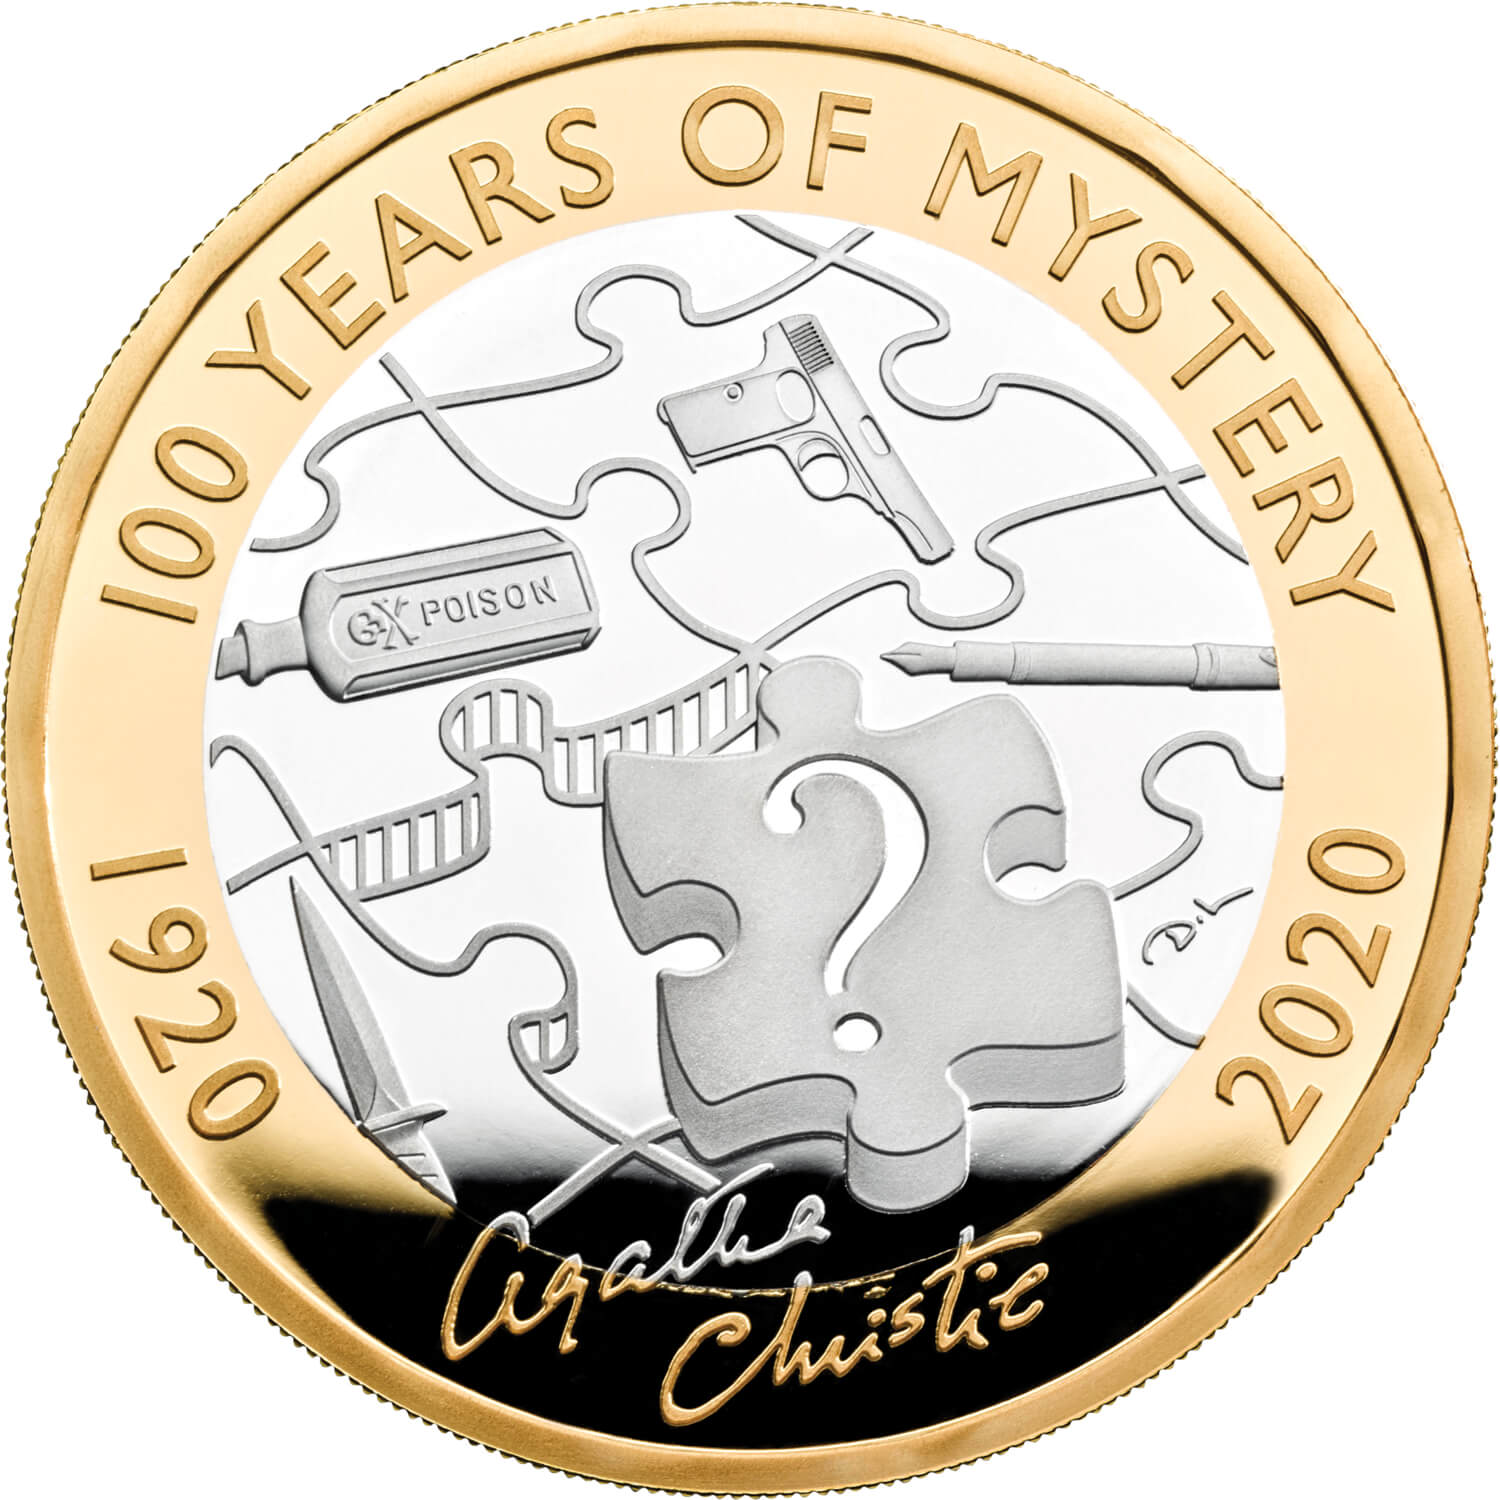 Agatha Christie £2 Coin